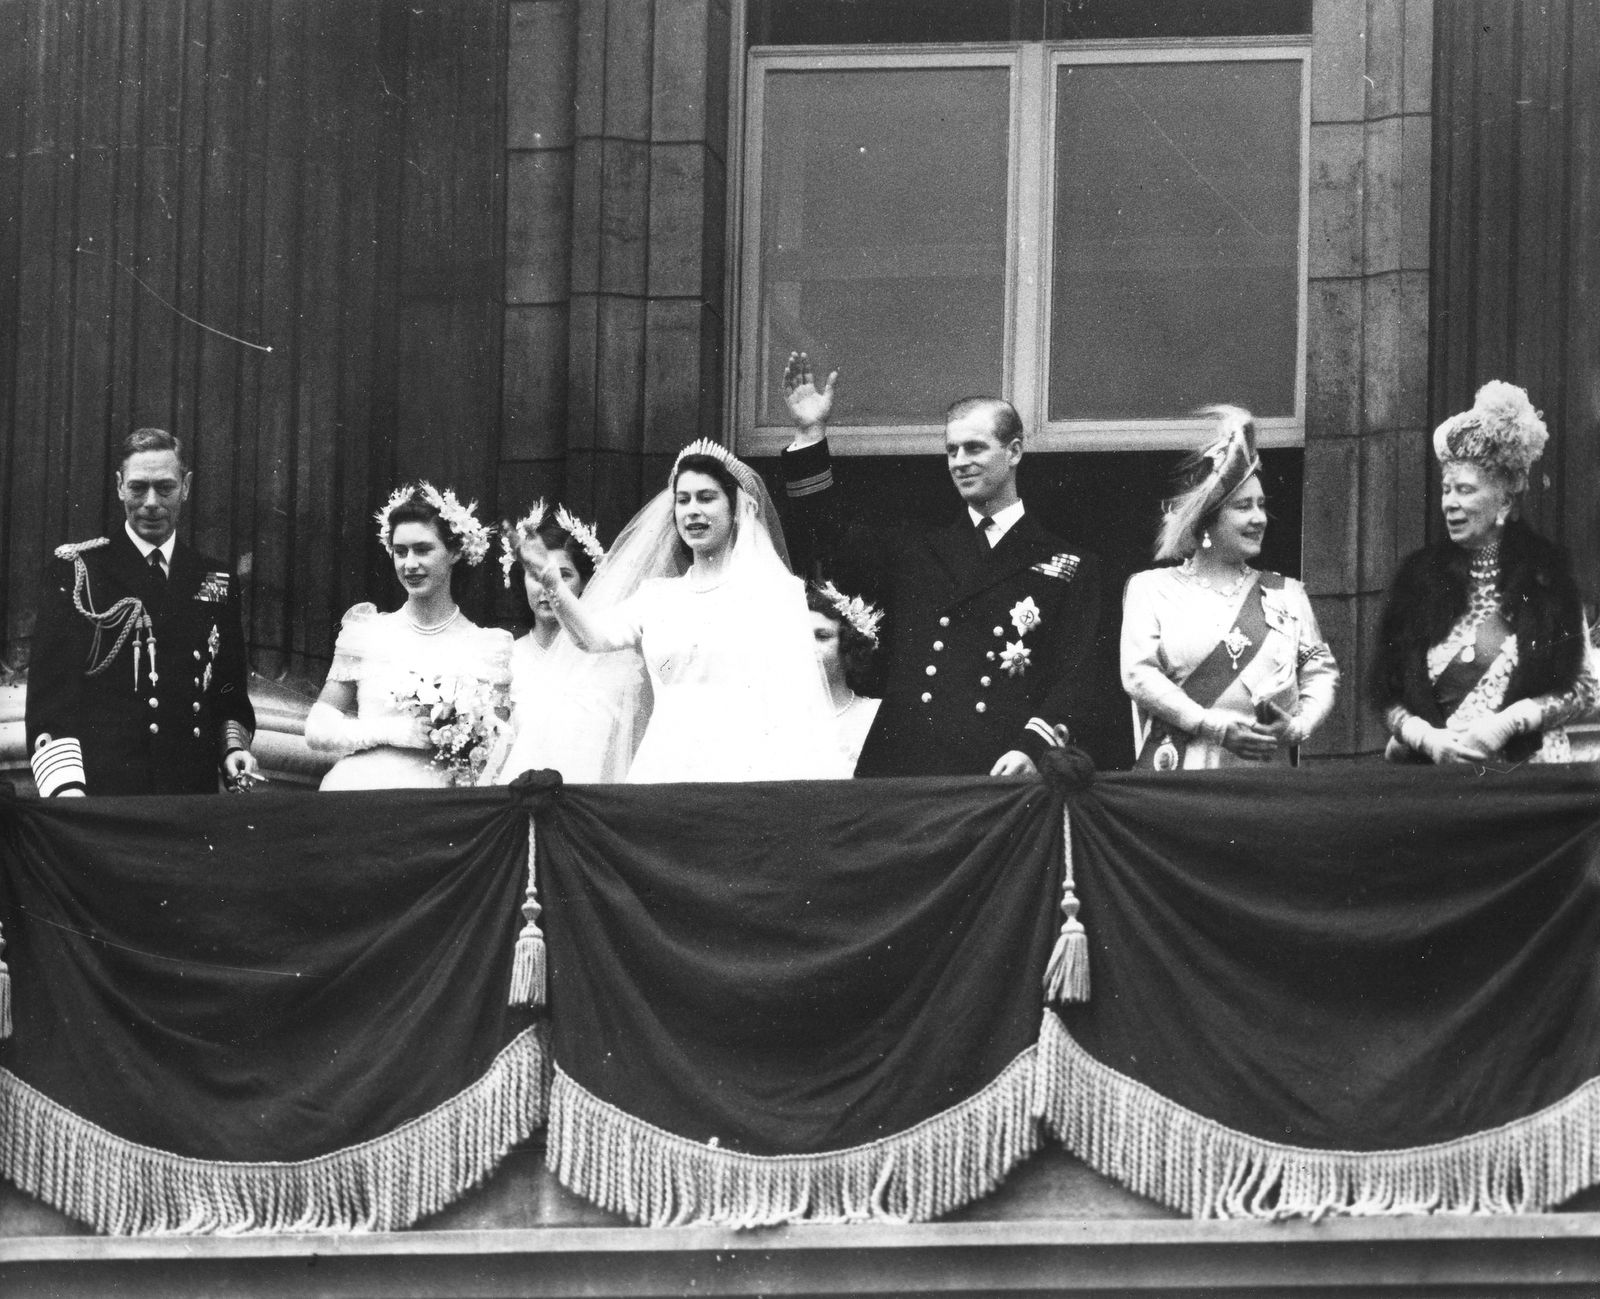 Tháng 11/1947, Công chúa Elizabeth kết hôn với Hoàng thân Philip, một trung úy trong Hải quân Anh. Hôn lễ của hai người chính thức diễn ra tại Tu viện Westminster trước sự chứng kiến của gần 2.000 quan khách. Ít ai biết rằng, để lấy Công chúa Elizabeth, Philip đã từ bỏ tước vị hoàng gia Hy Lạp, chấp nhận làm thị vệ để được ở bên cạnh người phụ nữ mà ông yêu thương.